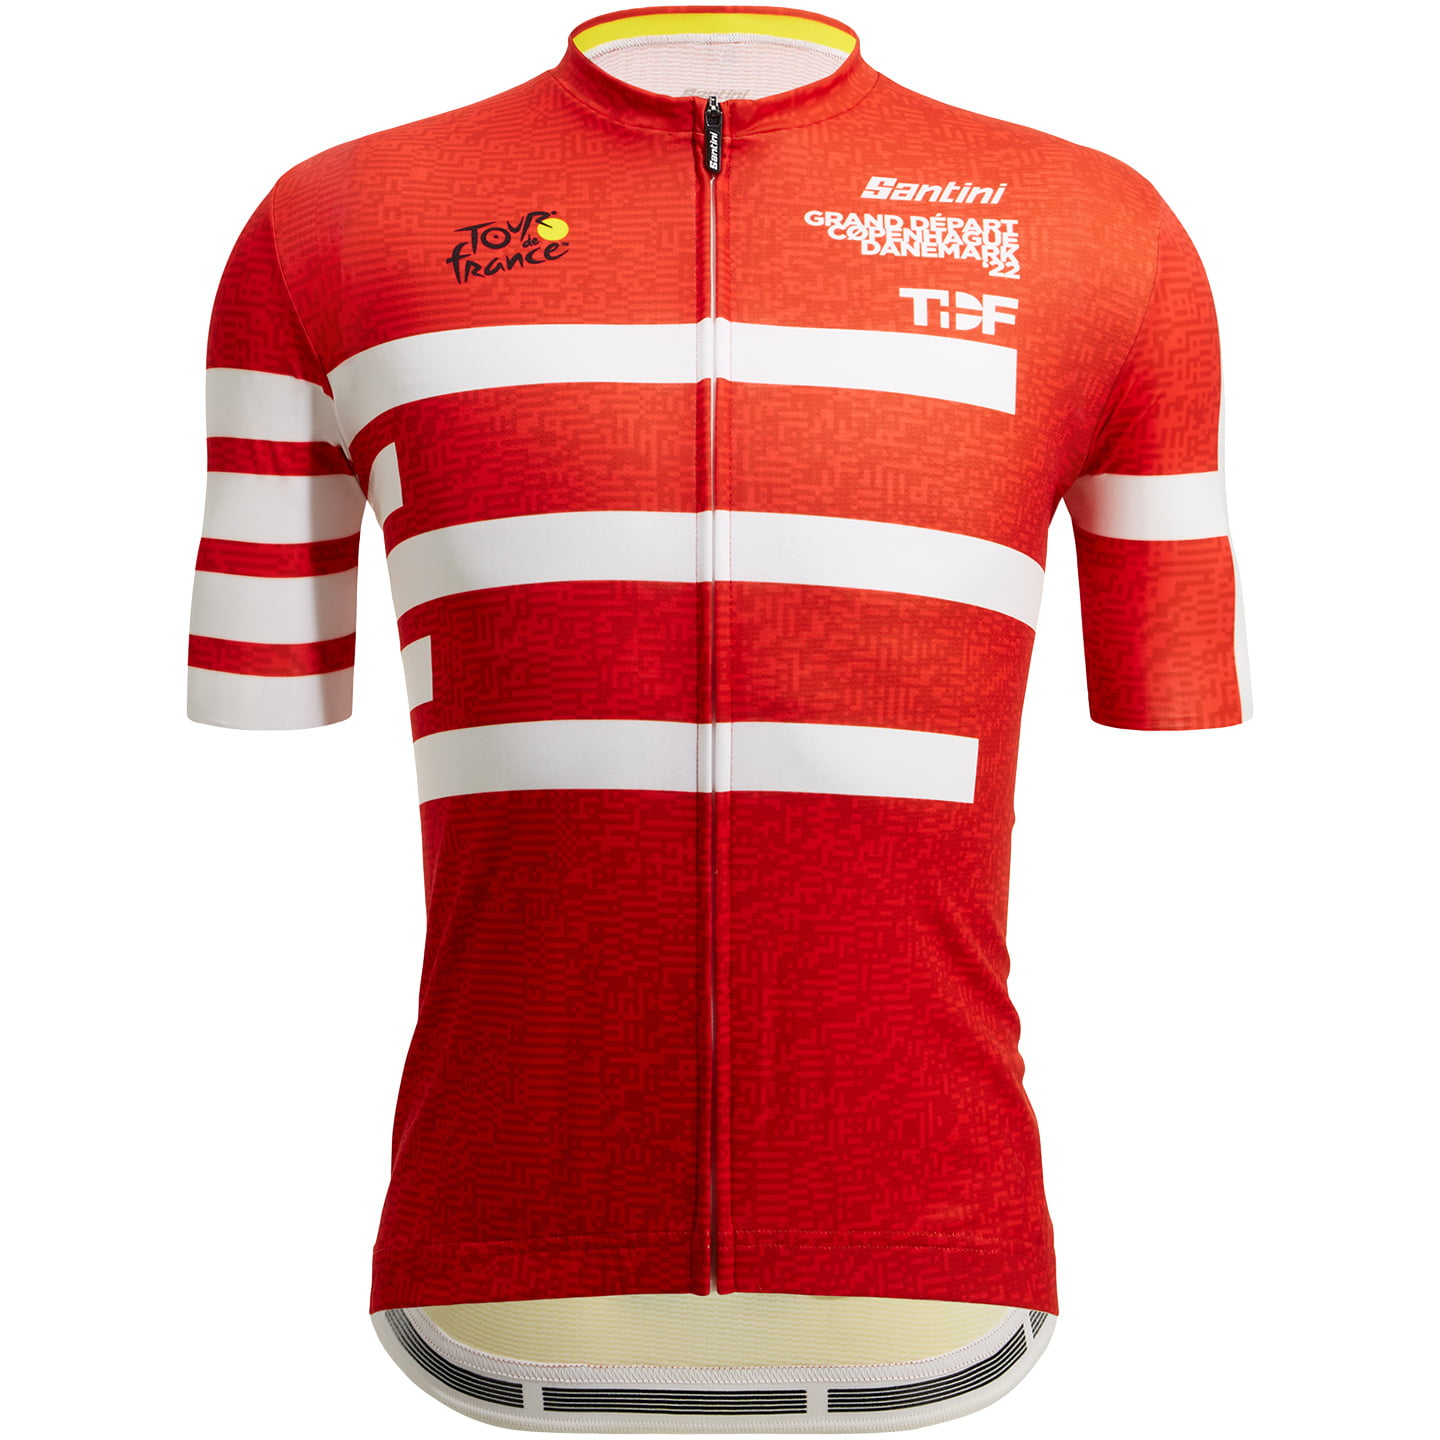 TOUR DE FRANCE Kopenhagen 2022 Short Sleeve Jersey, for men, size 3XL, Bike shirt, Cycling gear